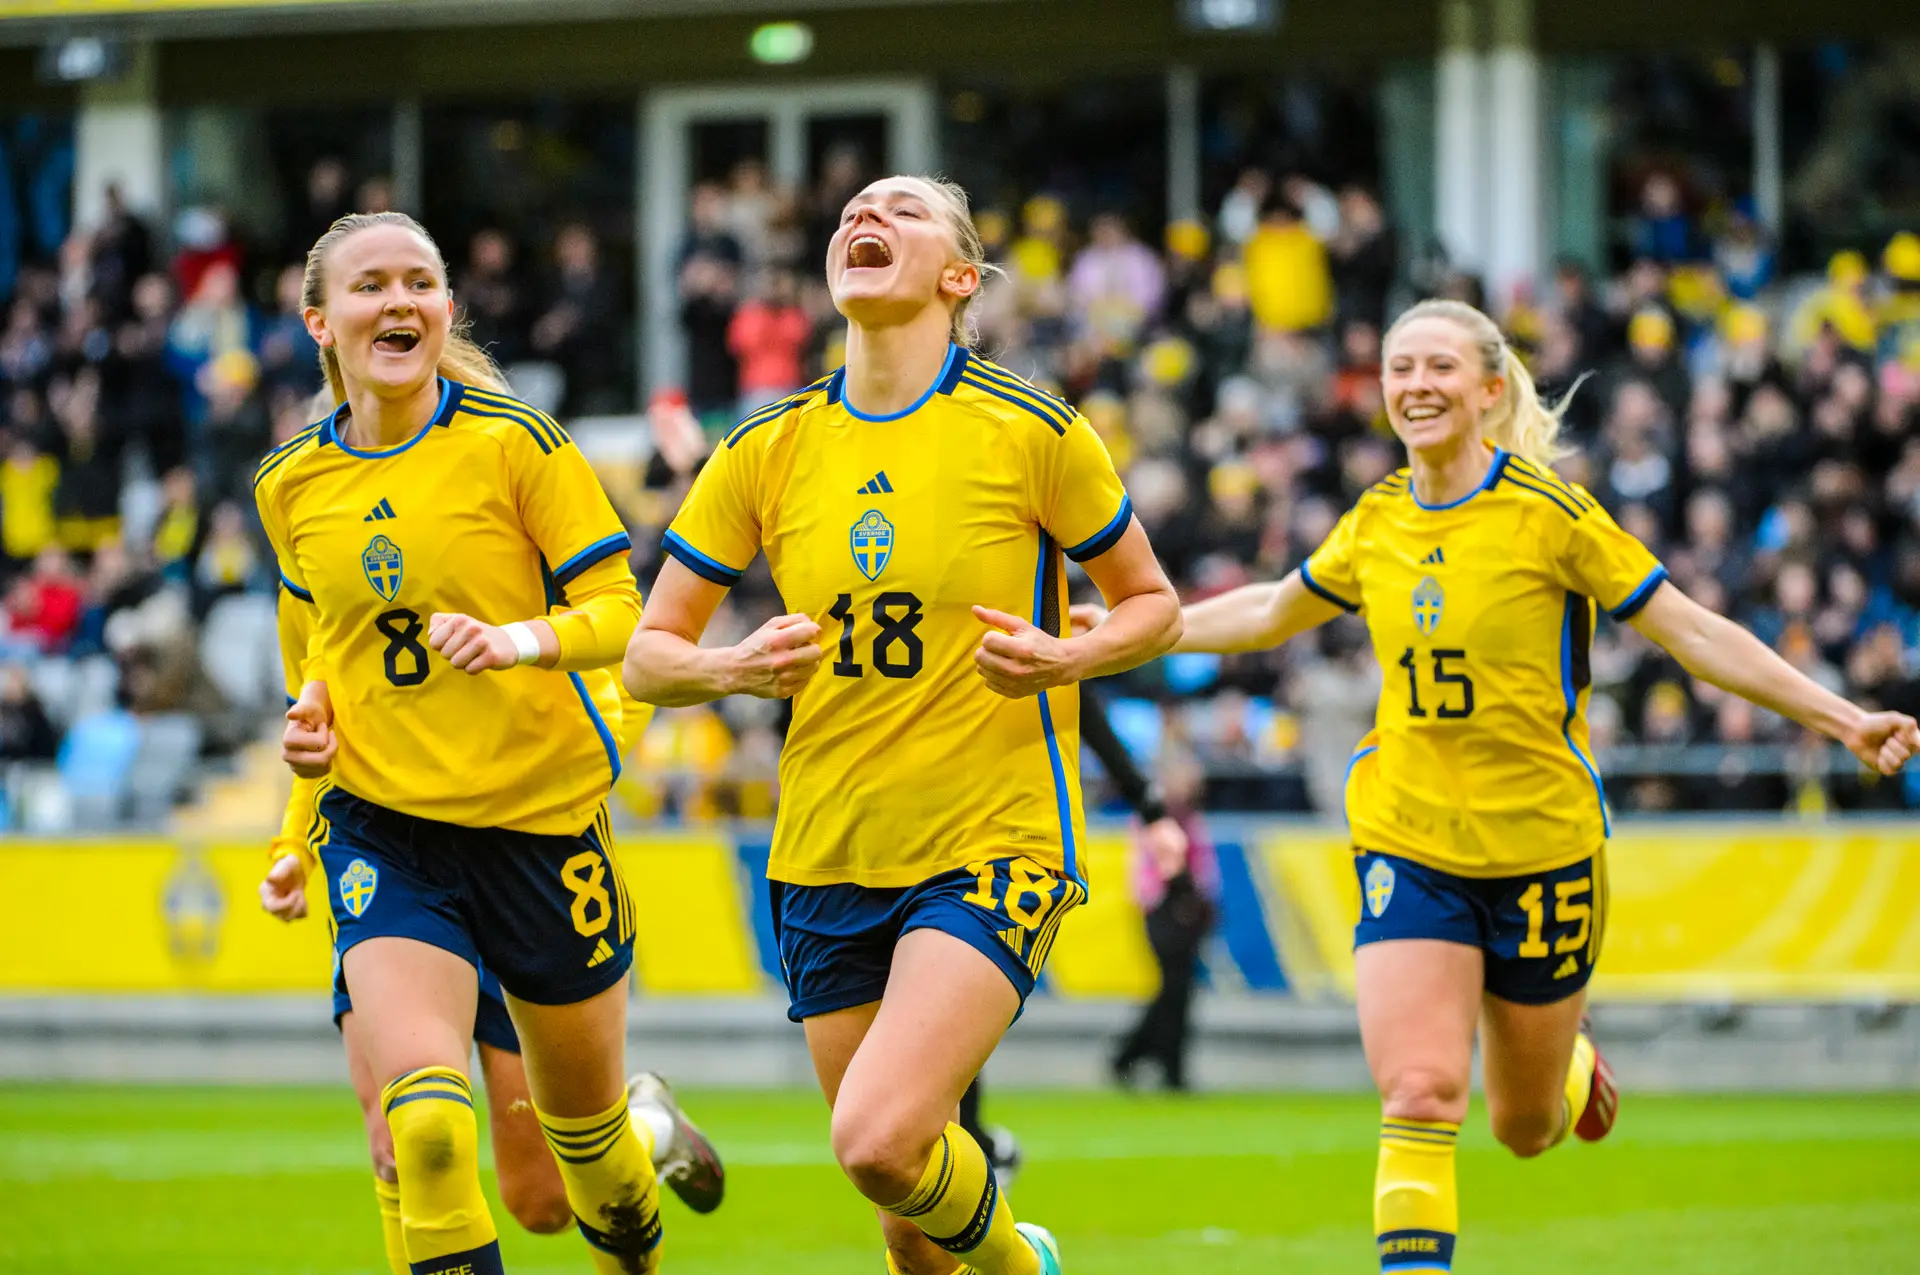 Fase final do EURO Sub-19 Feminino de 2022: Conheça as finalistas